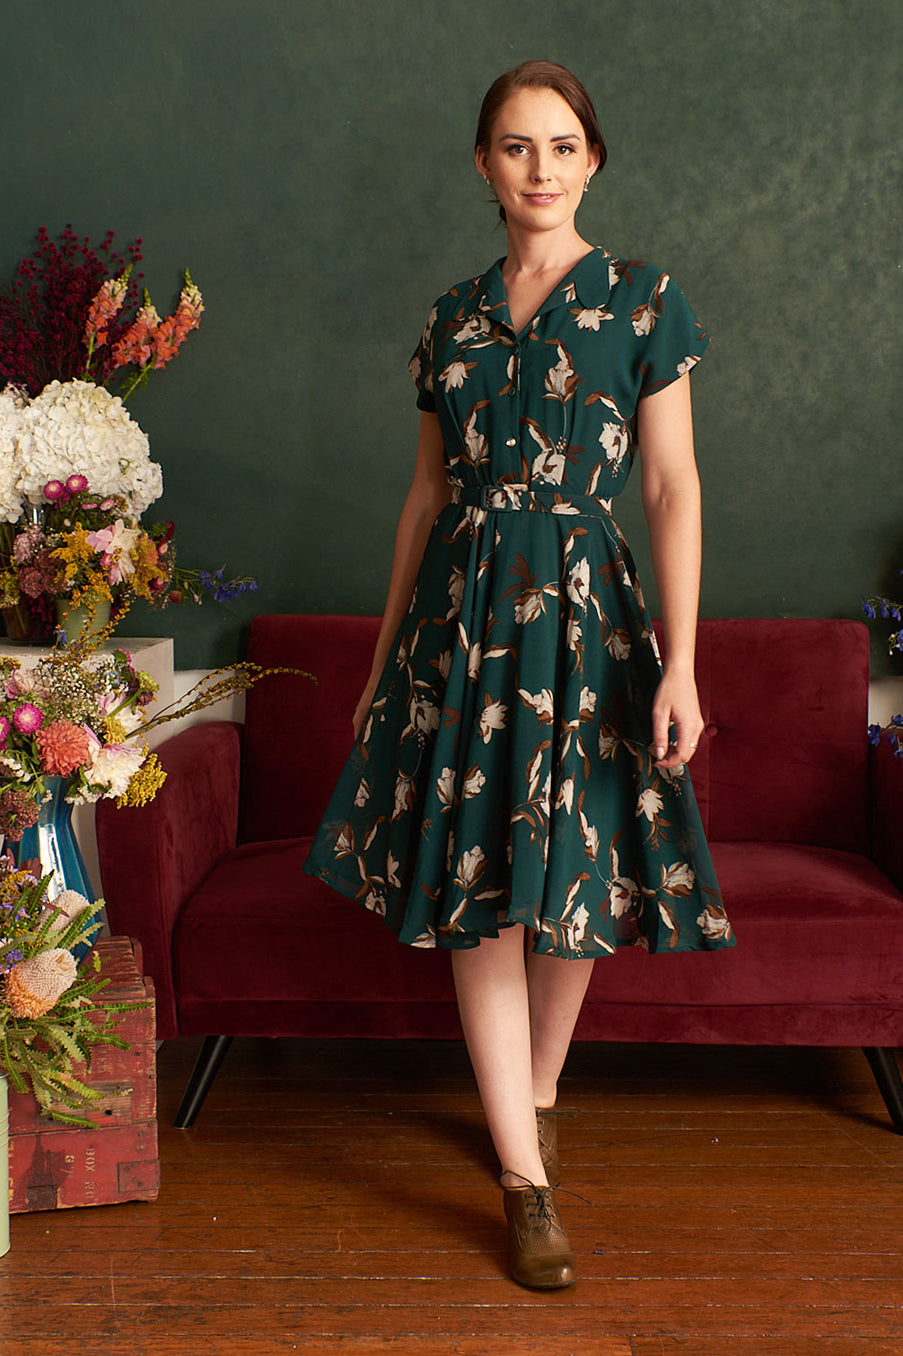 Manette Green & Brown Floral Dress